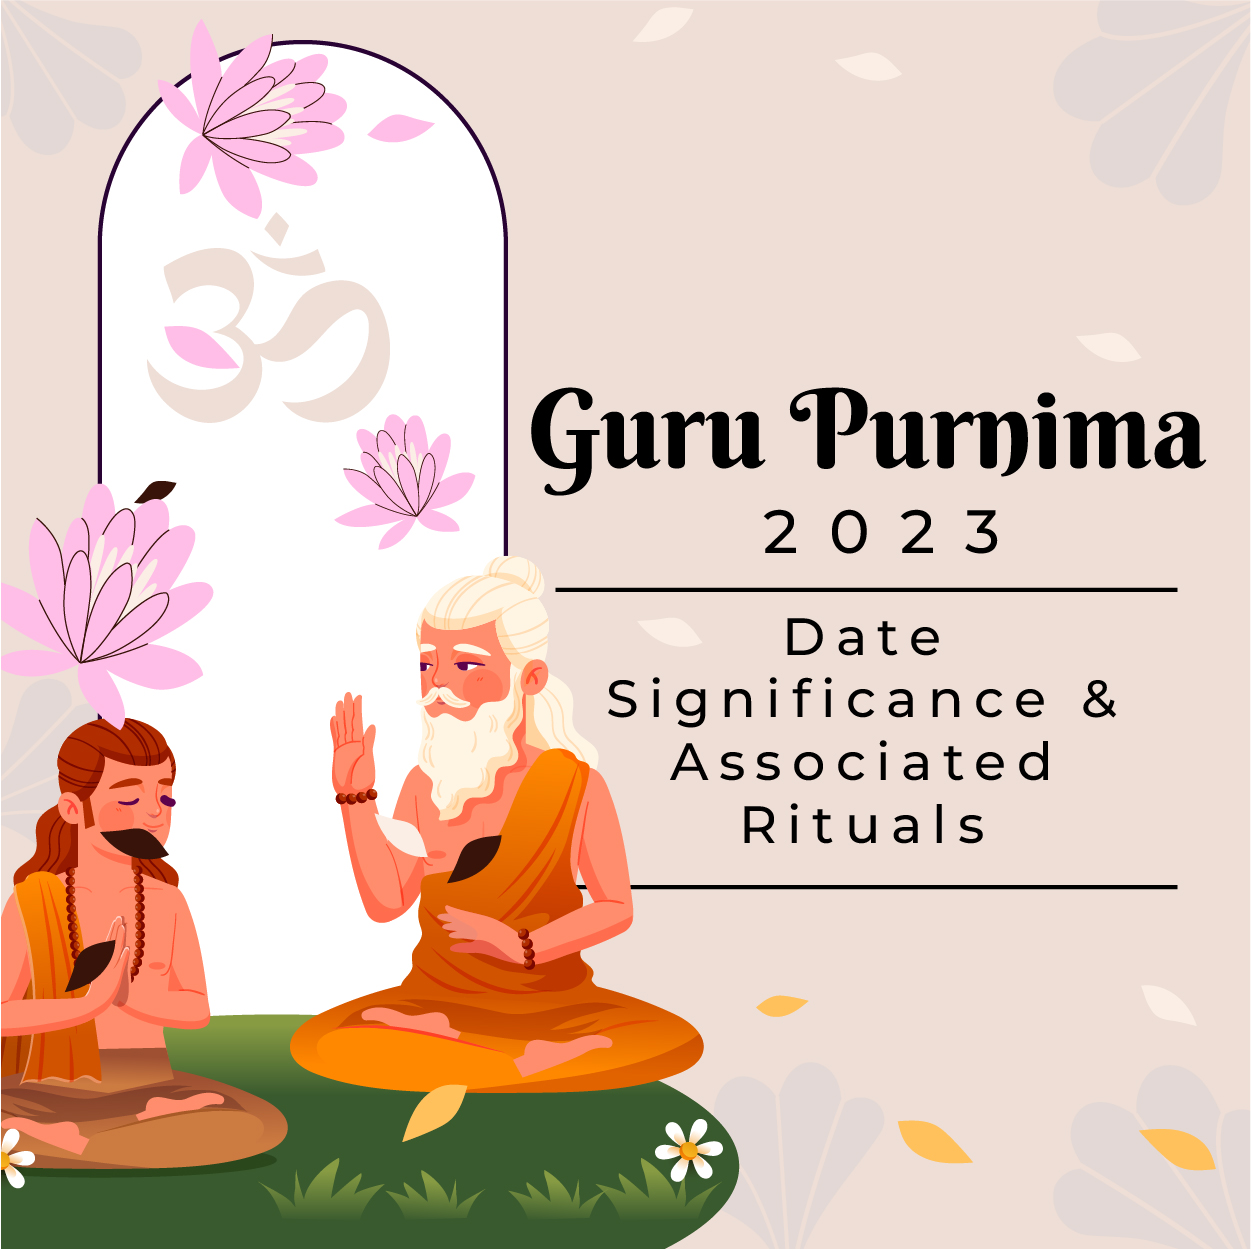 Guru Purnima 2023: Date, Significance & Associated Rituals